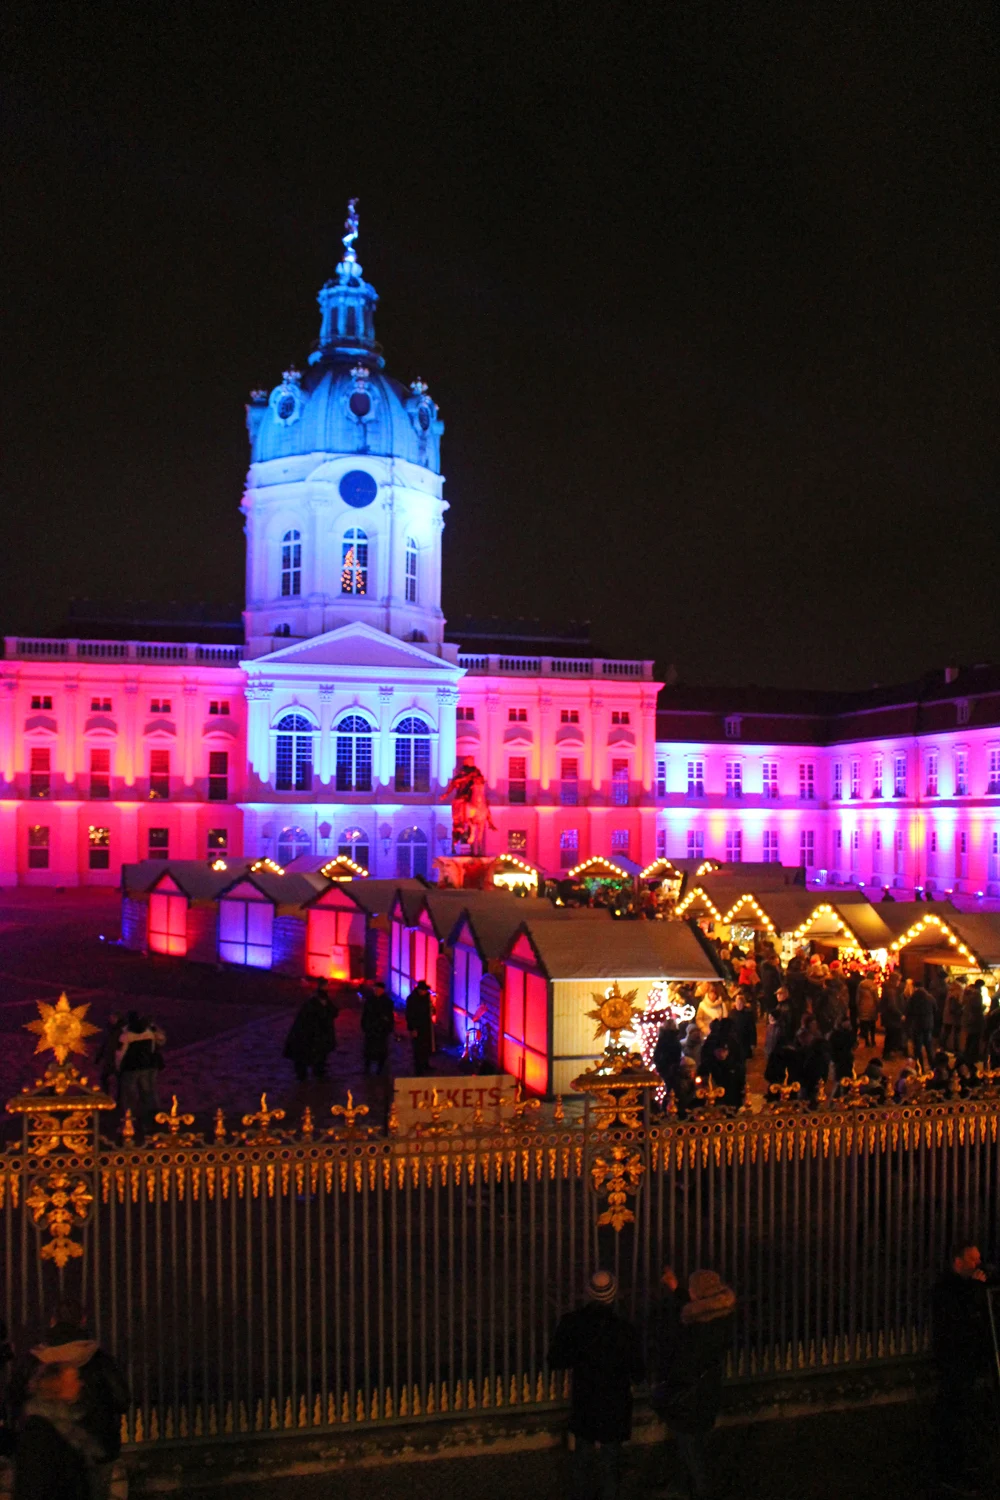 Weihnachtsmarkt vor dem Schloss Charlottenburg, Berlin Christmas markets - luxury travel blog